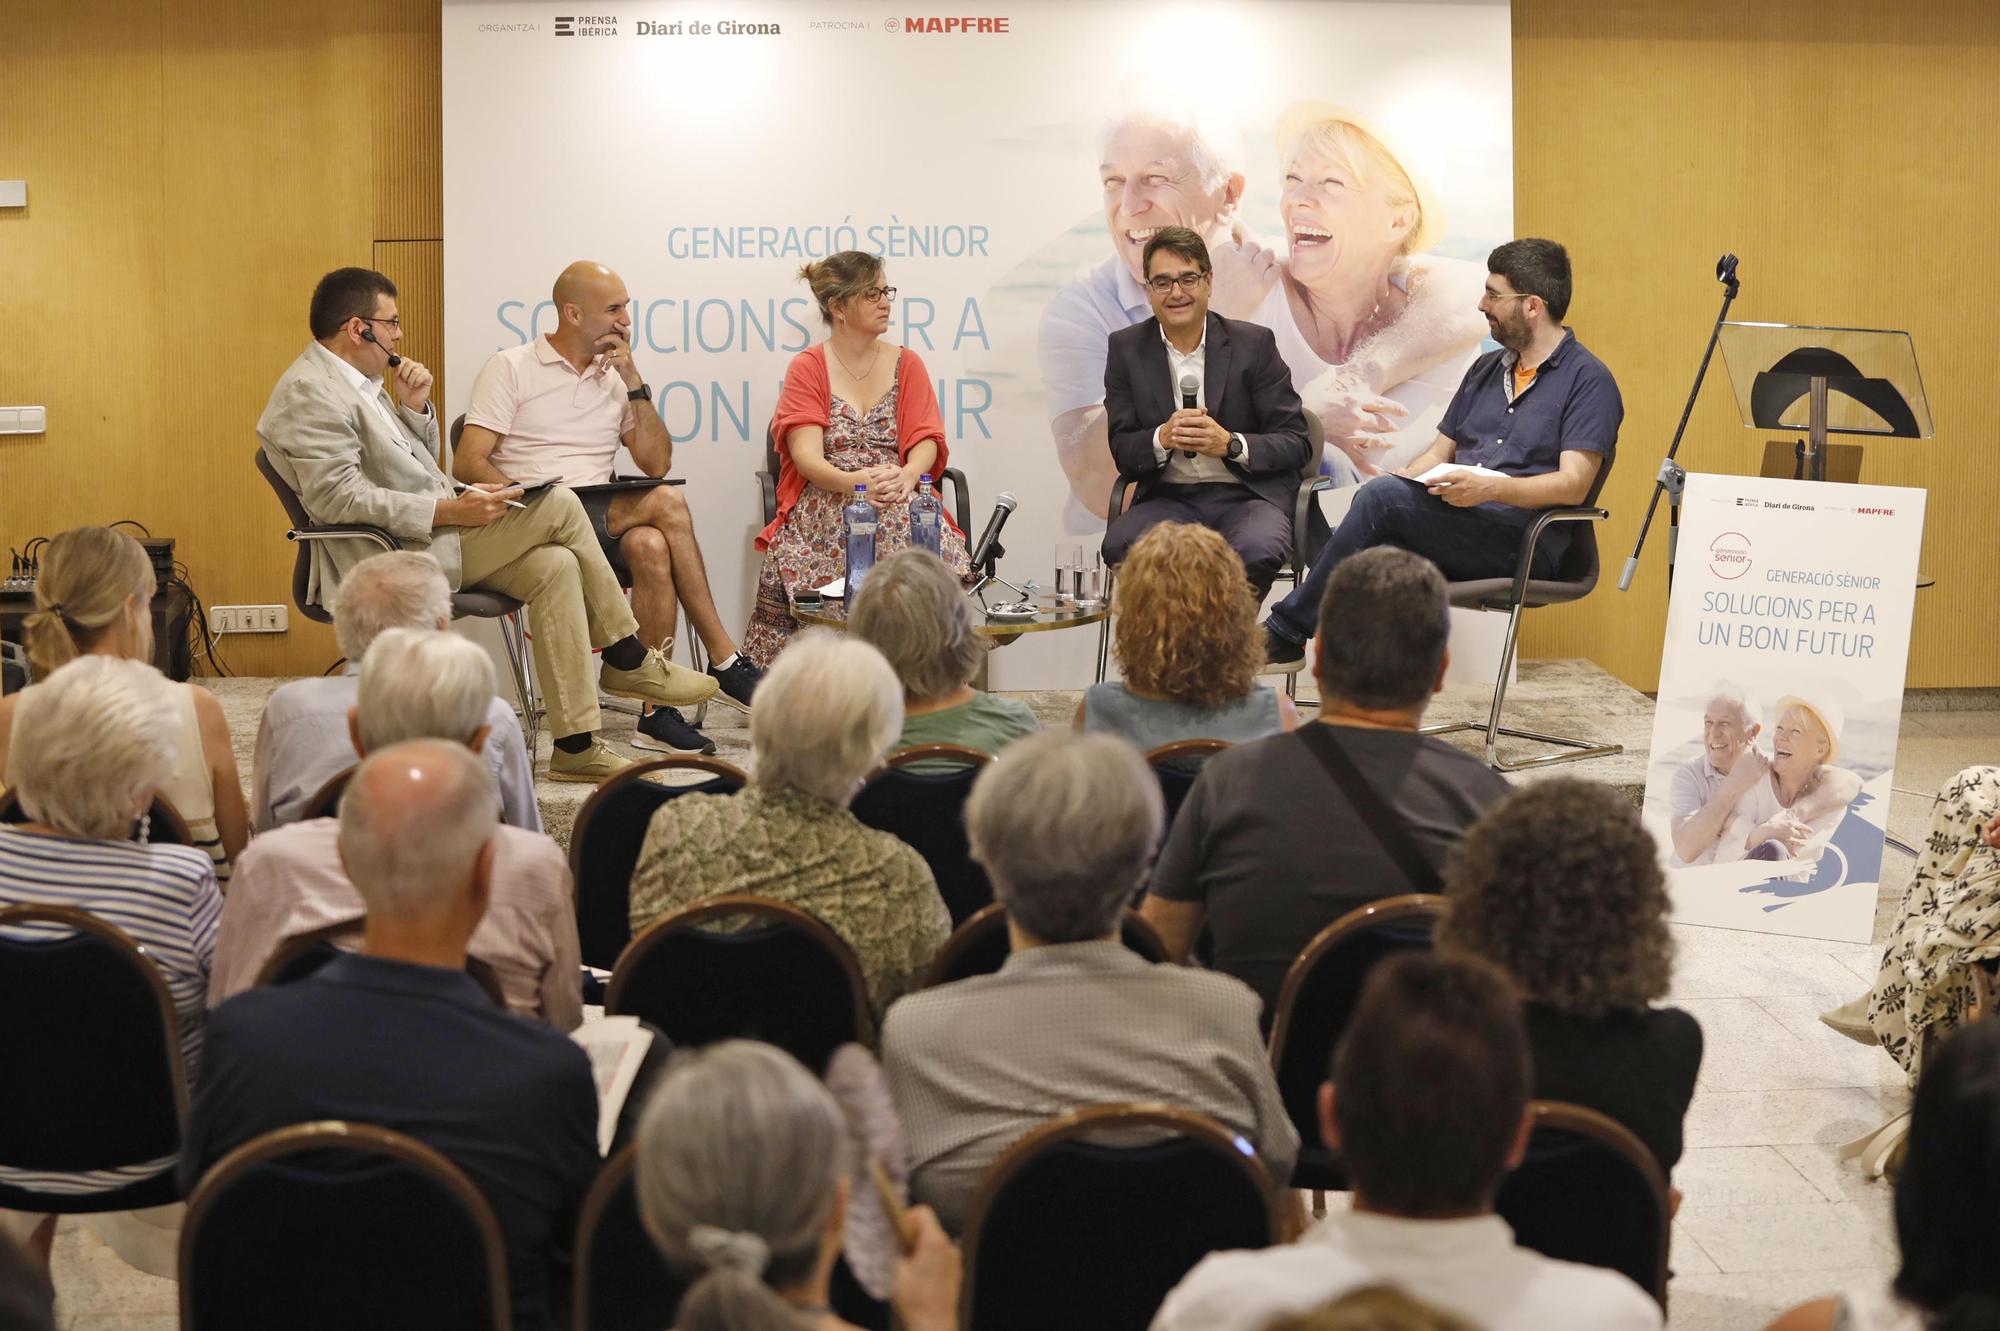 Jornada sobre Generació Sènior de Diari de Girona i Mapfre